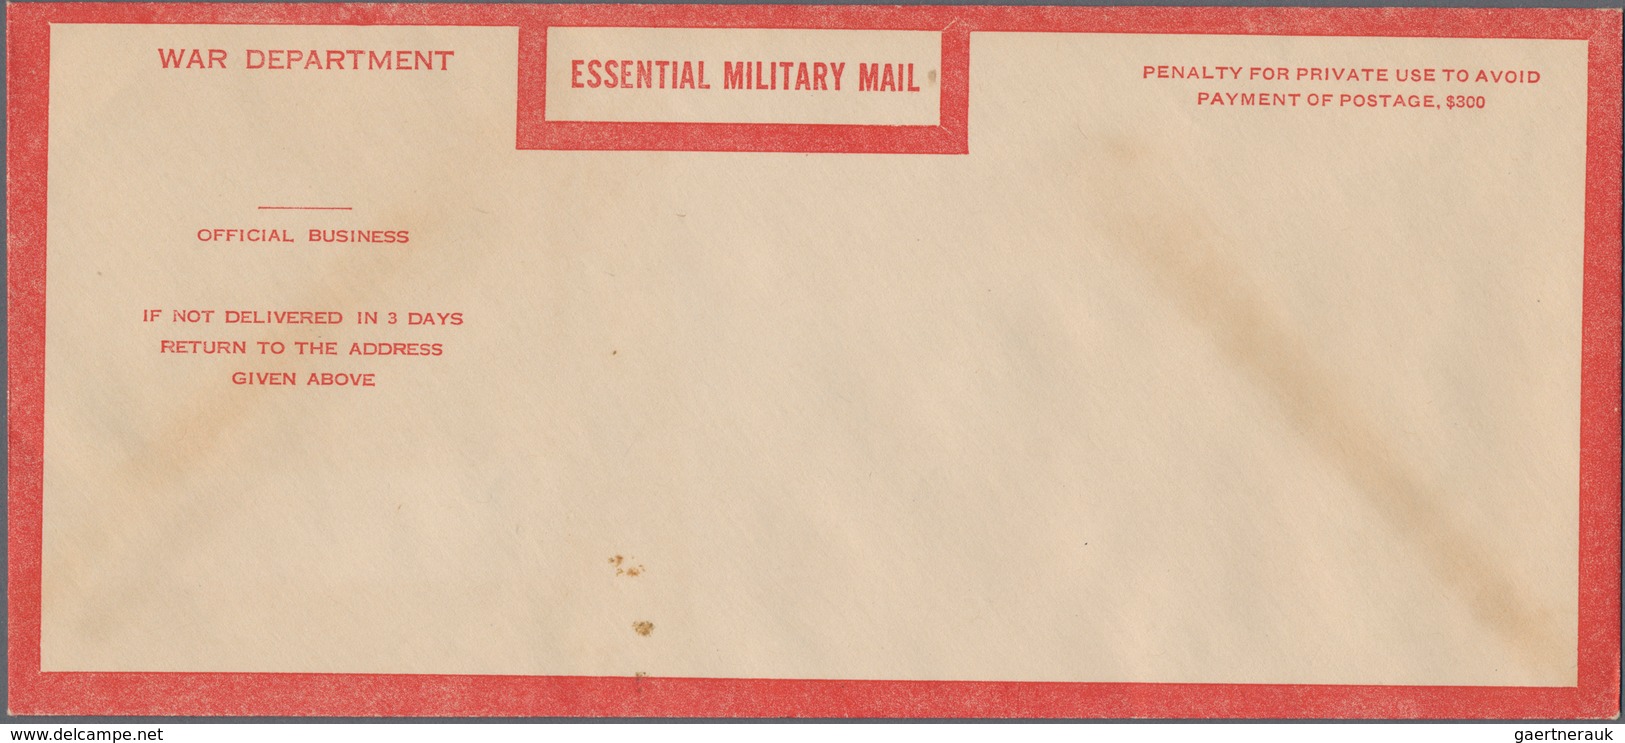 Vereinigte Staaten von Amerika - Militärpost / Feldpost: 1938/72 highly interesting accumulation of